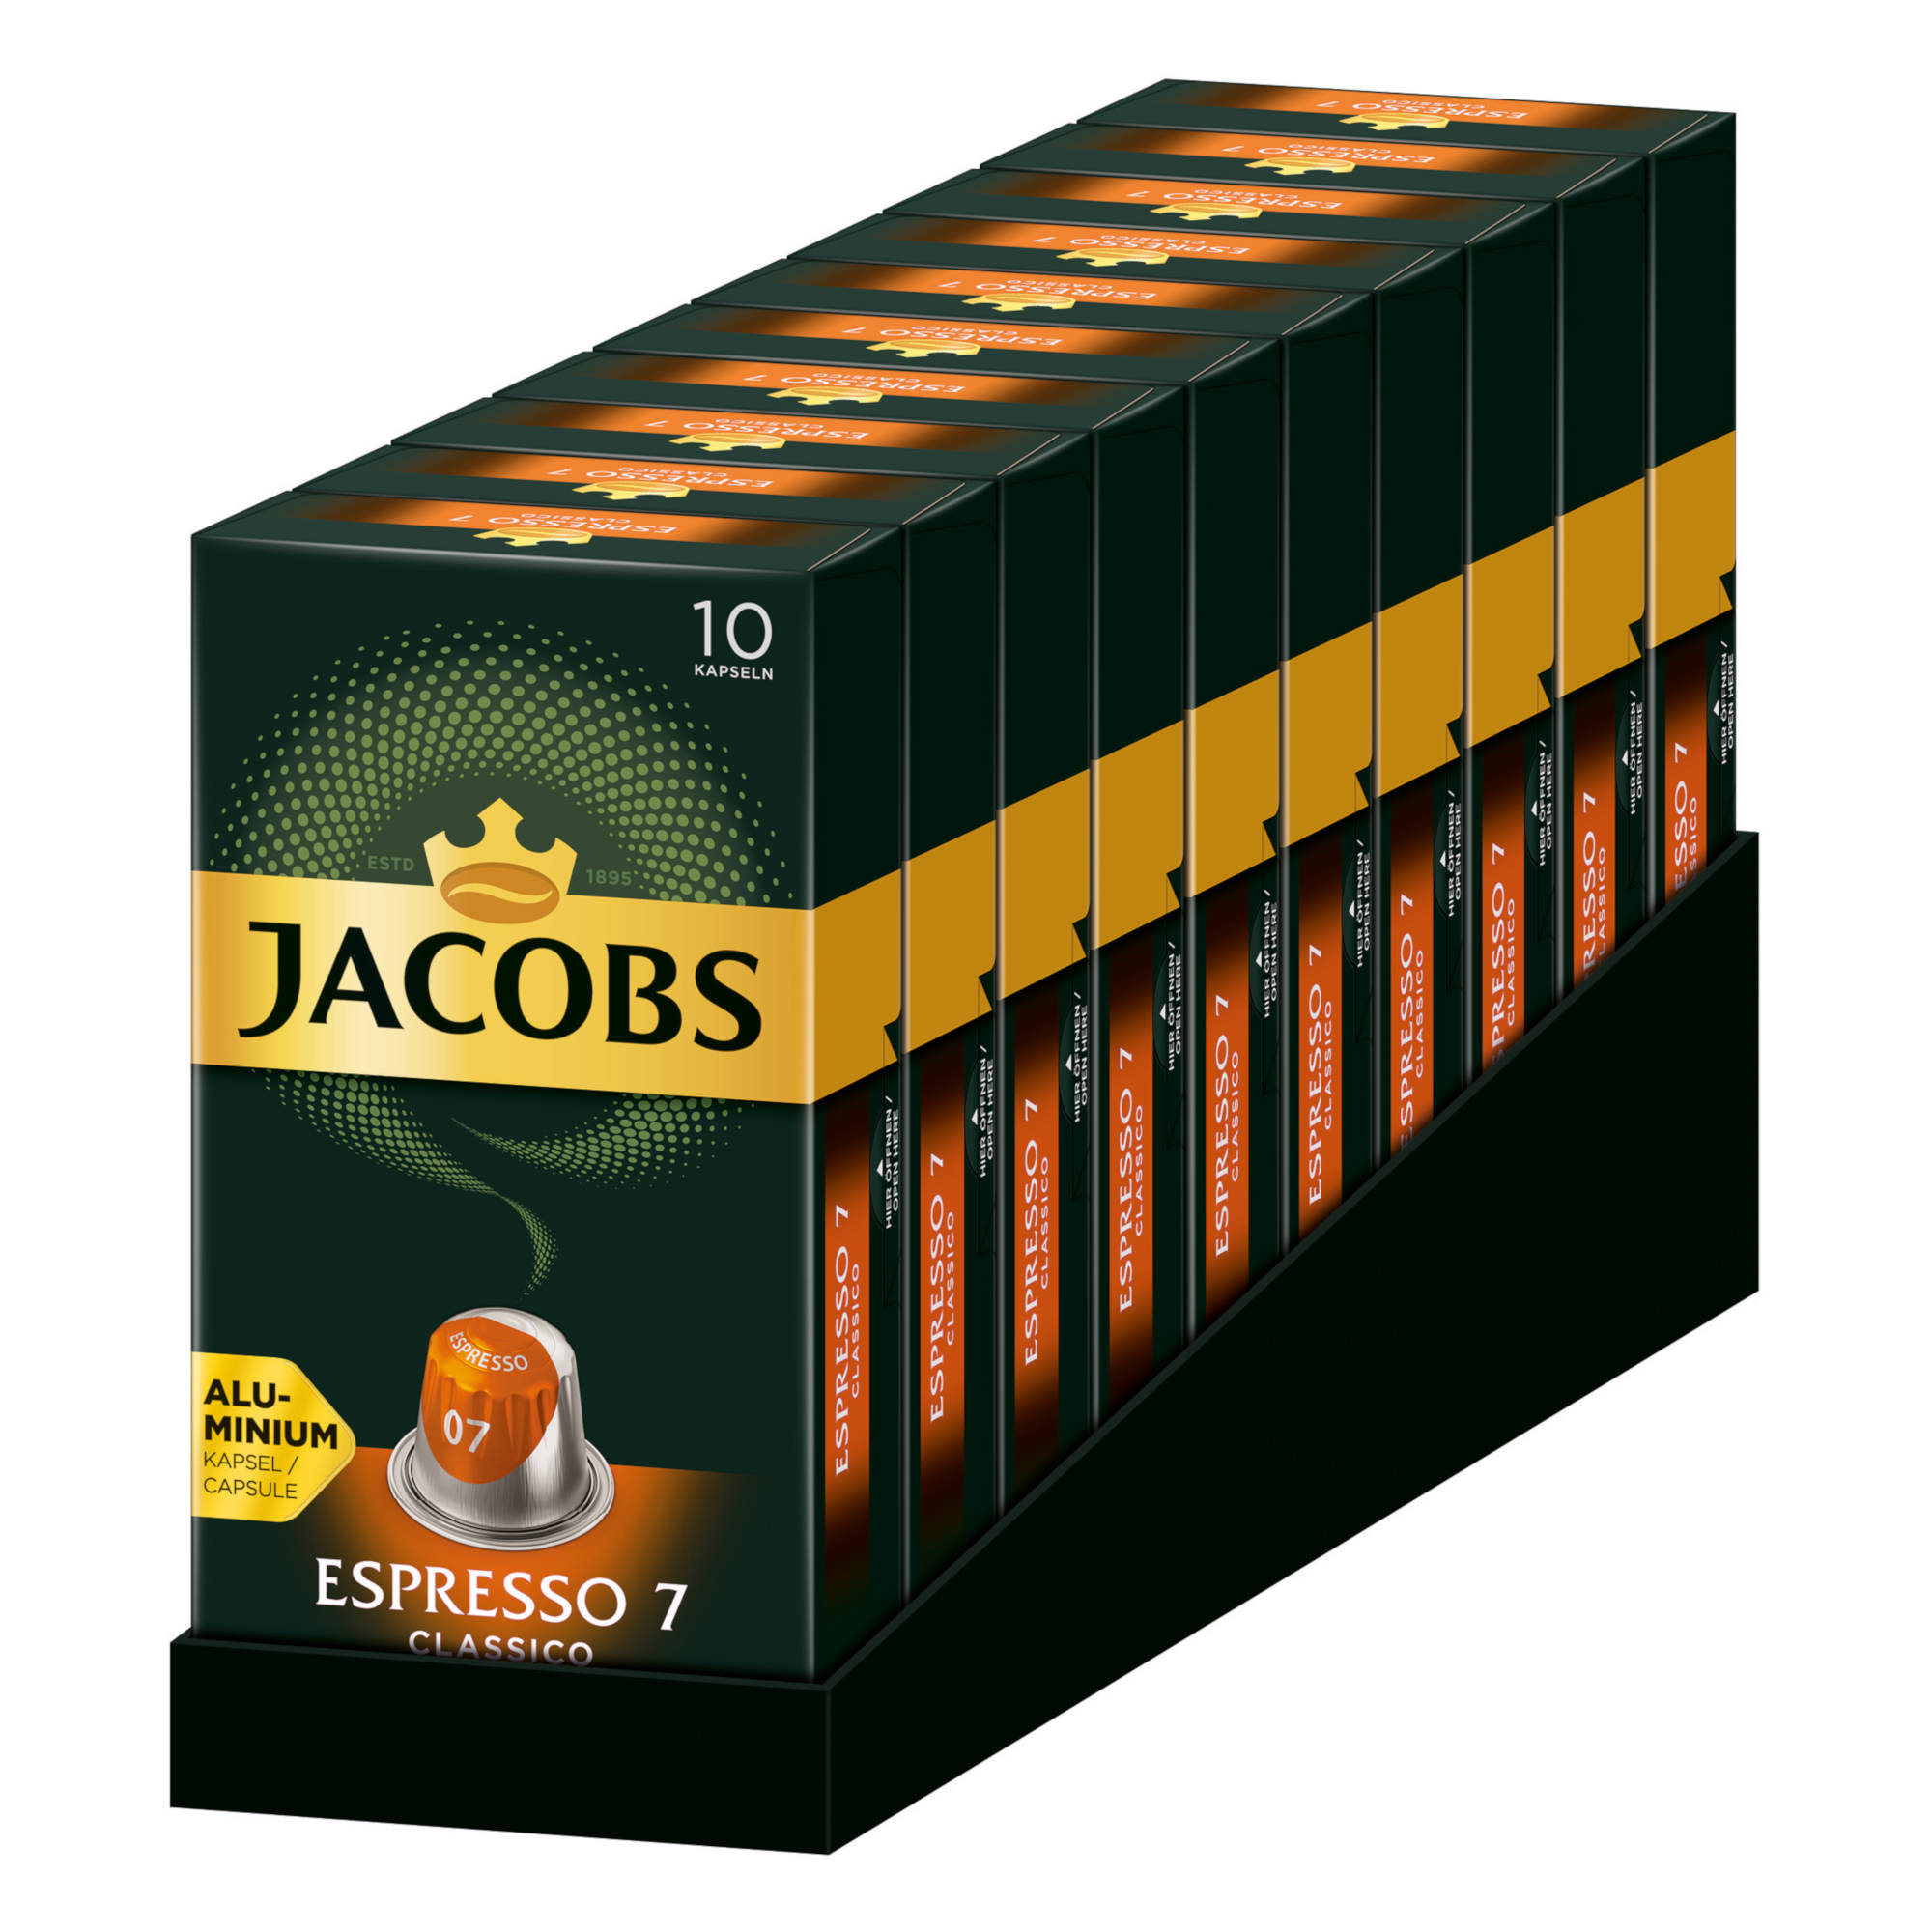 10 kompatible x Espresso 10 Classico JACOBS Nespresso®* 7 System) (Nespresso Kaffeekapseln